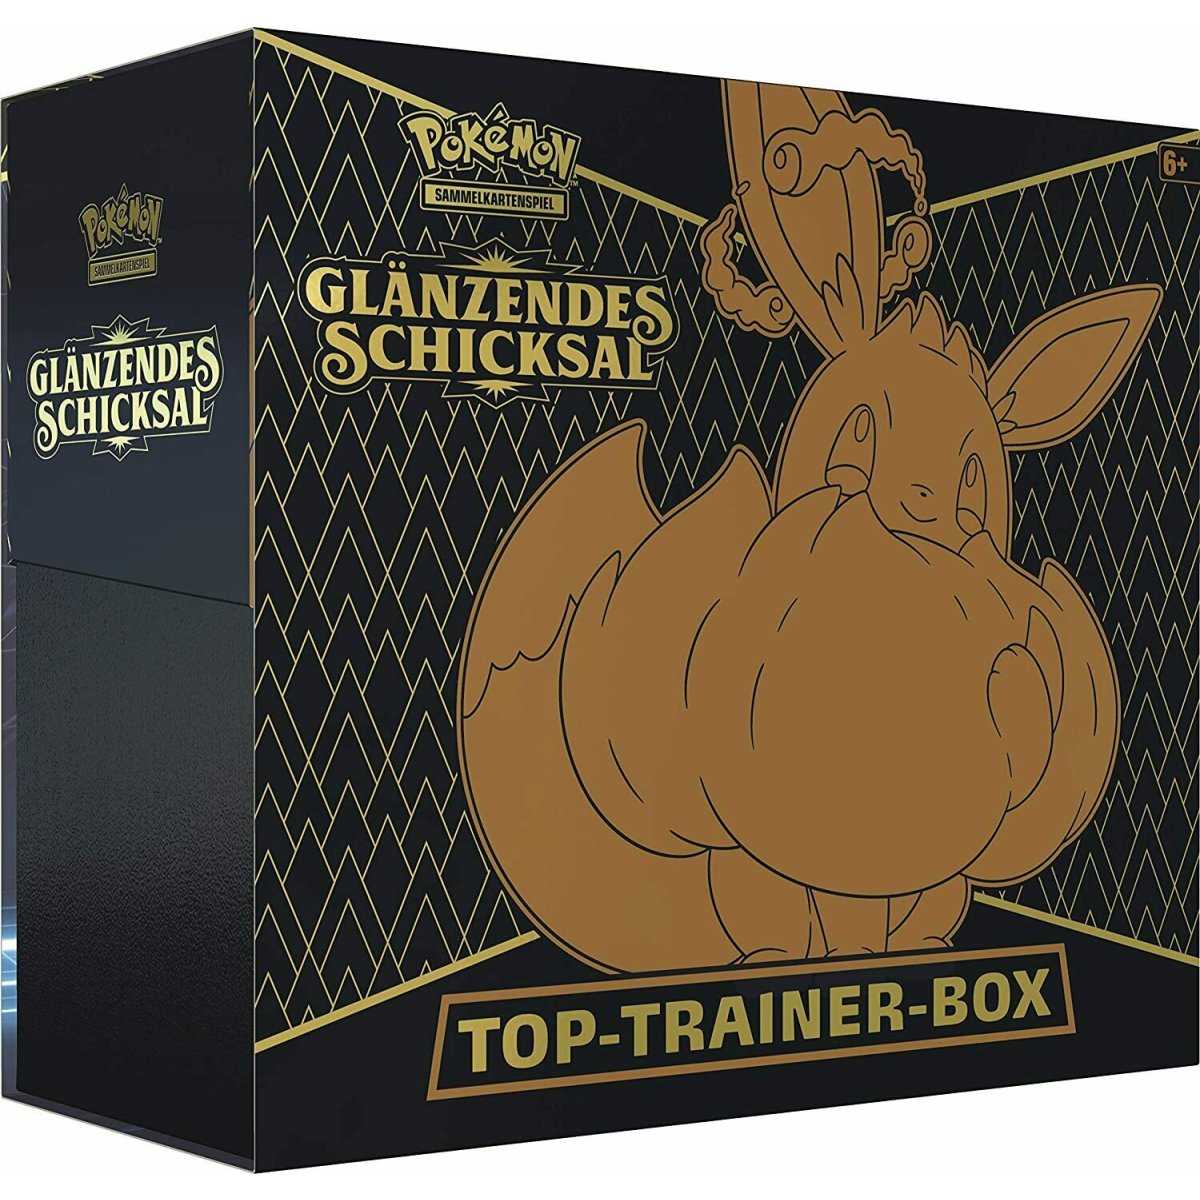 NEU & OVP Schneller Versand Pokemon Fusions Angriff Top Trainer Box Deutsch